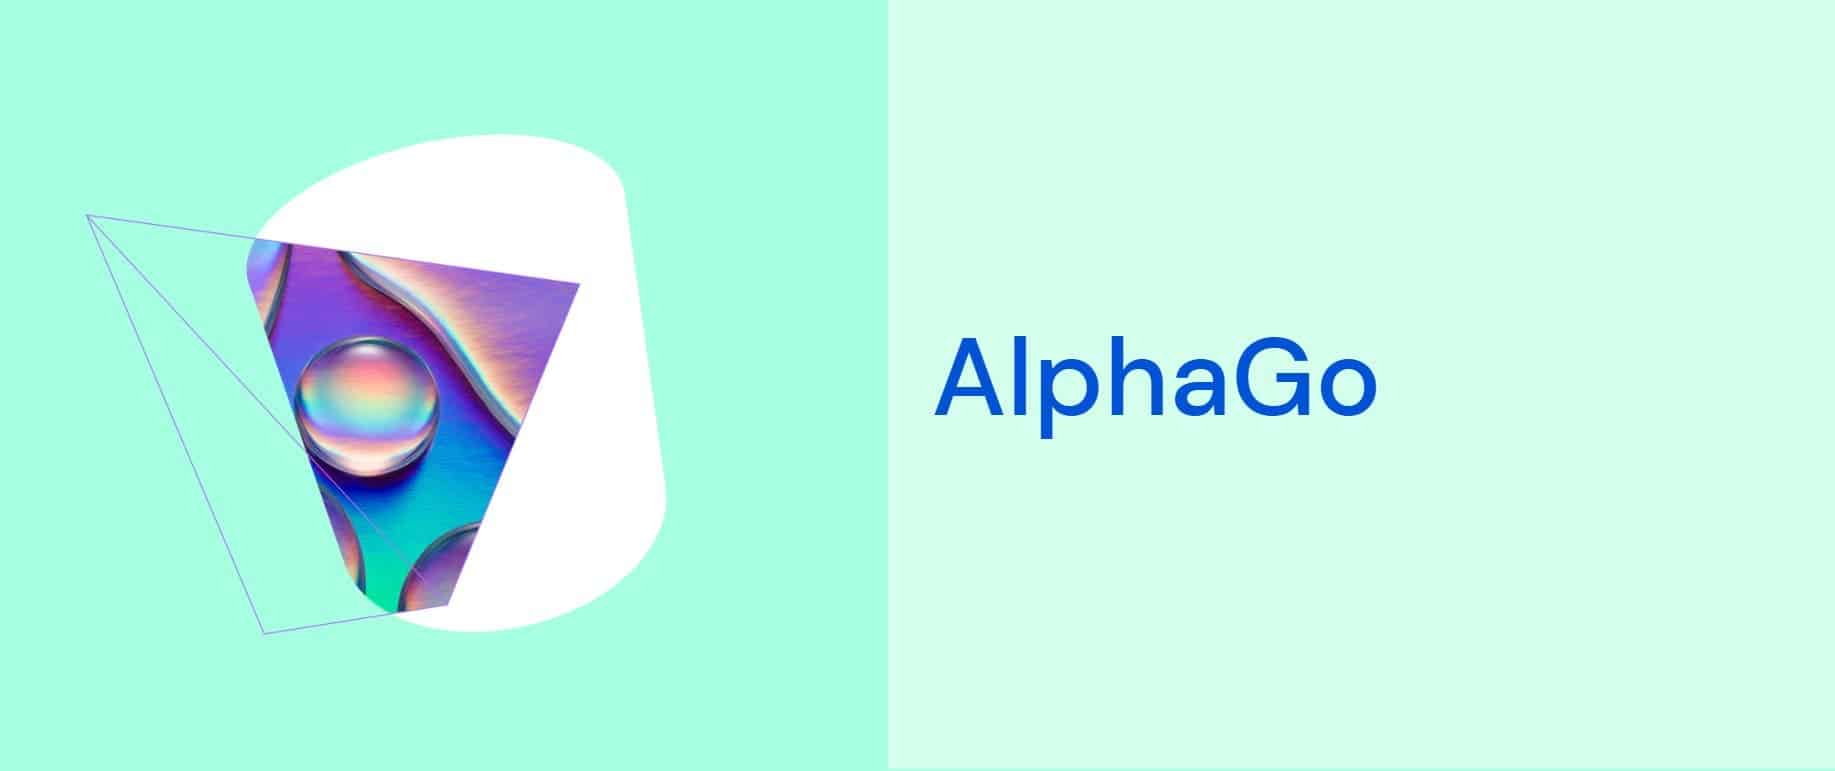 Google AlfaGo